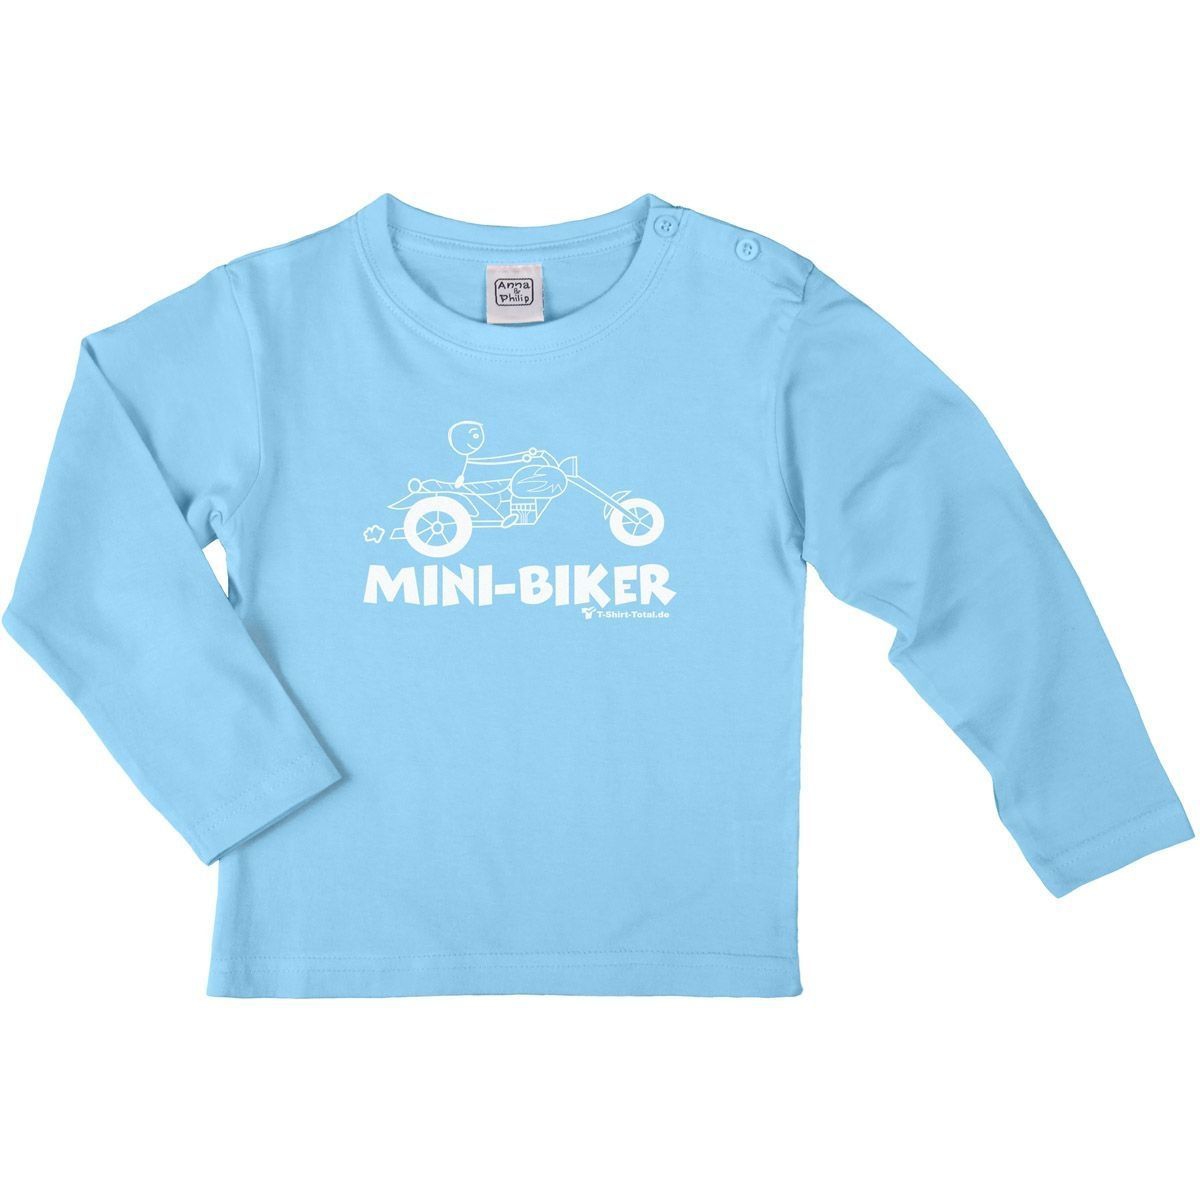 Mini Biker Kinder Langarm Shirt hellblau 134 / 140